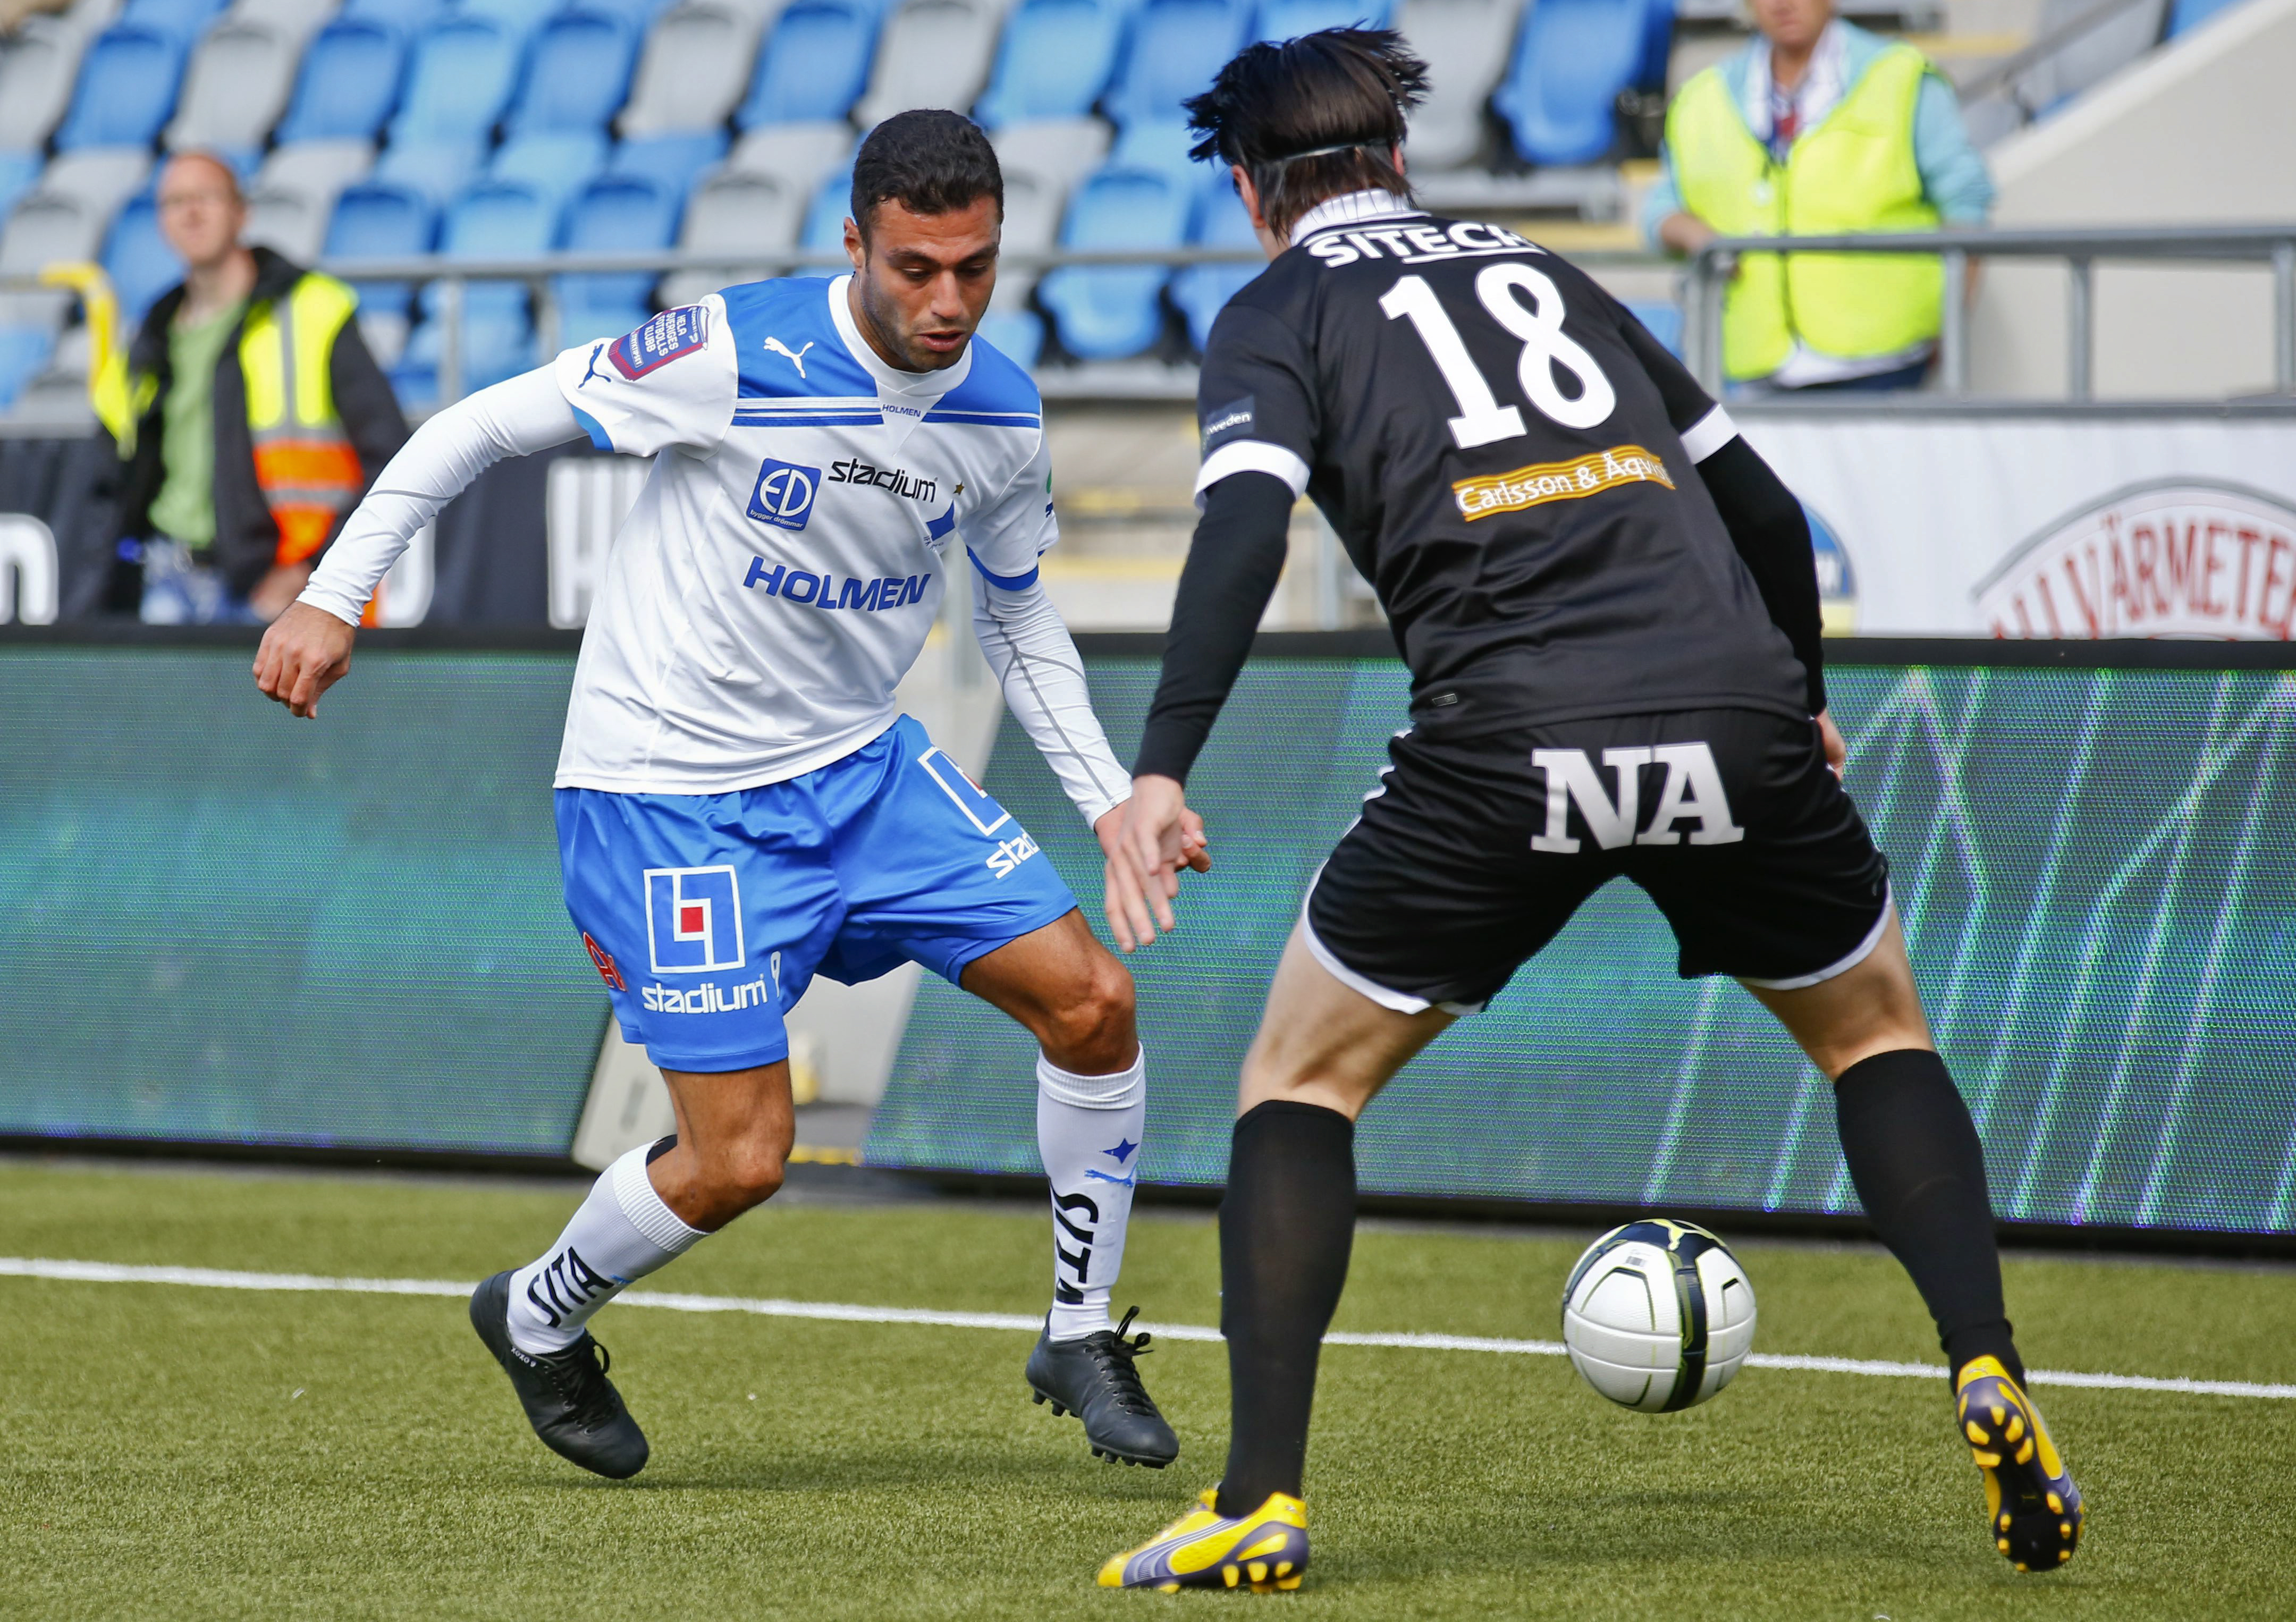 Imad Khalili, Örebro, Fotboll, Allsvenskan, ÖSK, IFK Norrköping